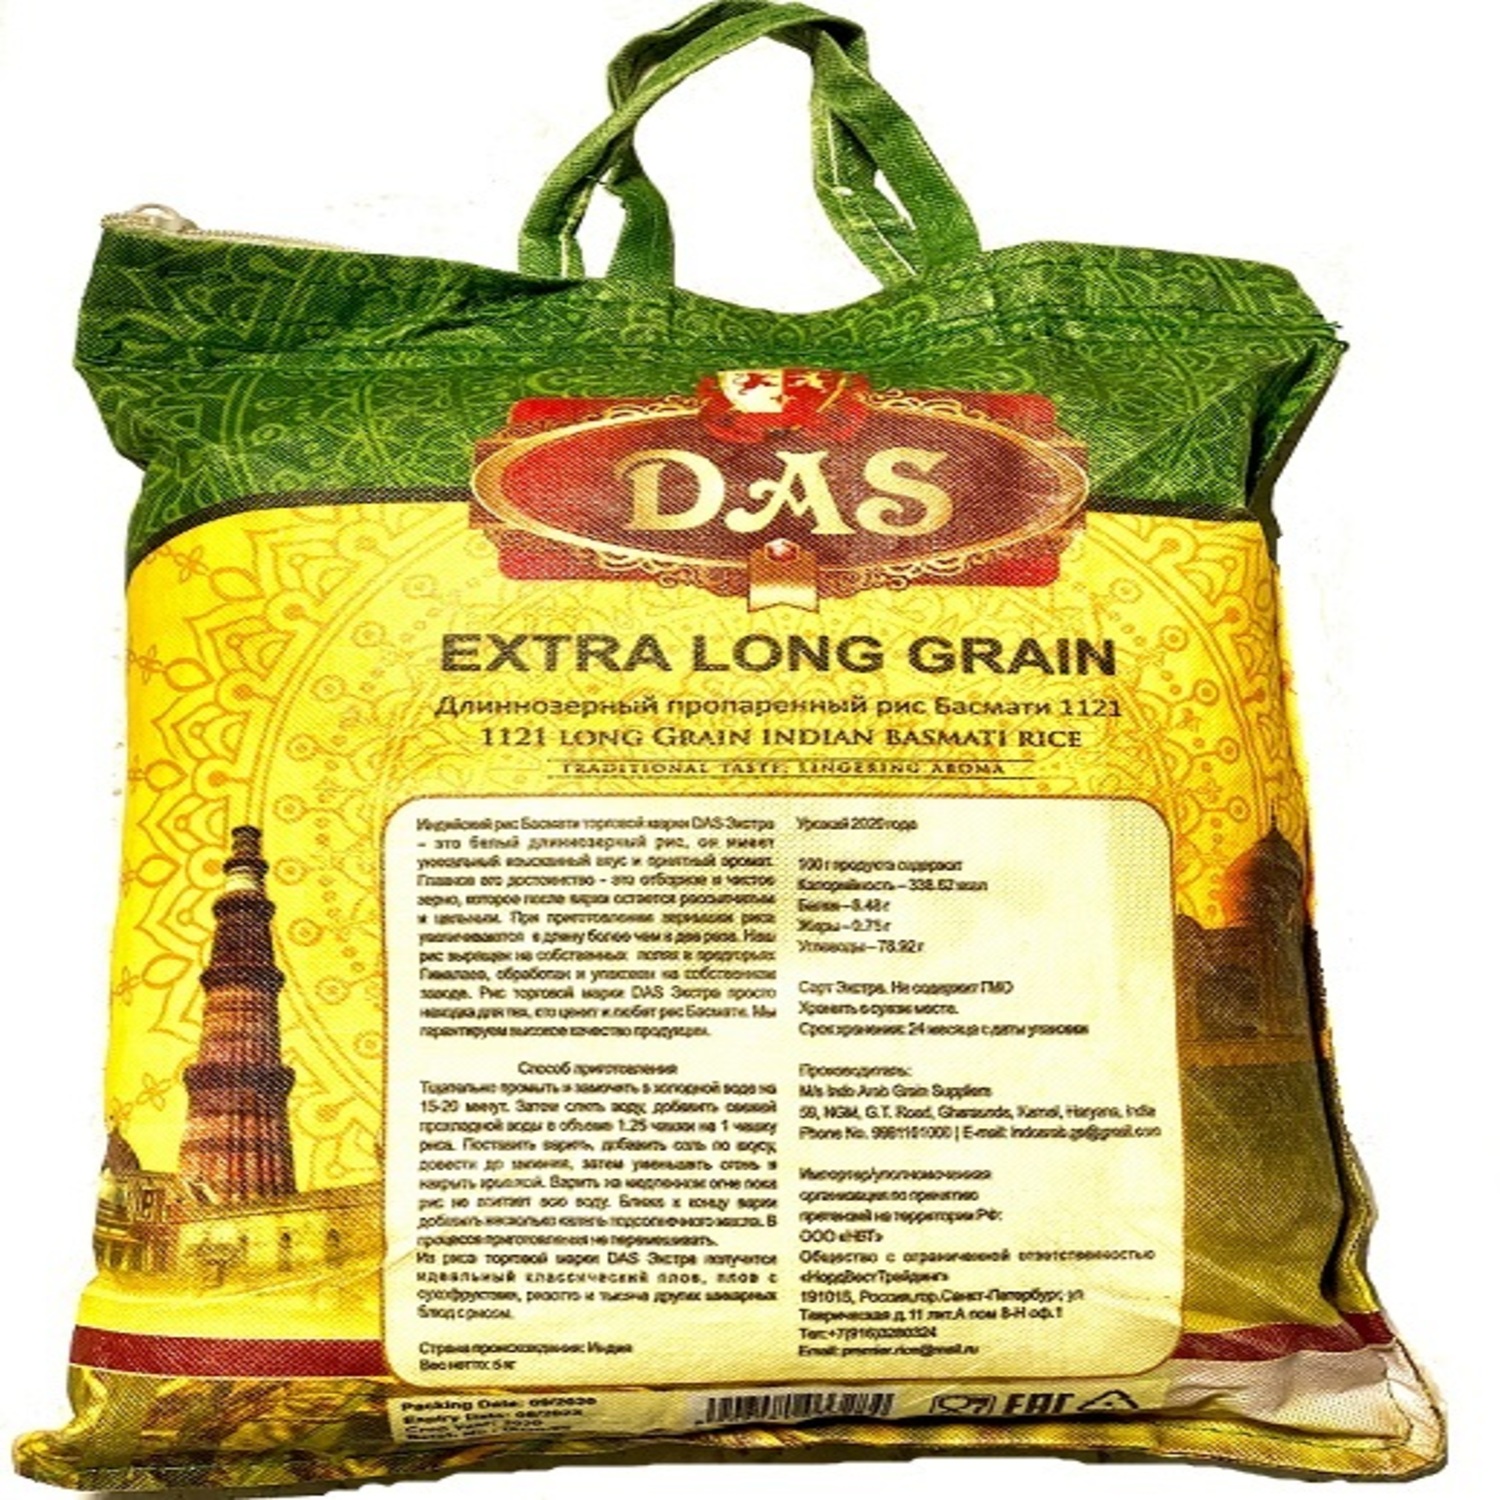 Рис басмати индийский DAS пропаренный мешок на молнии 5 кг - фото 4